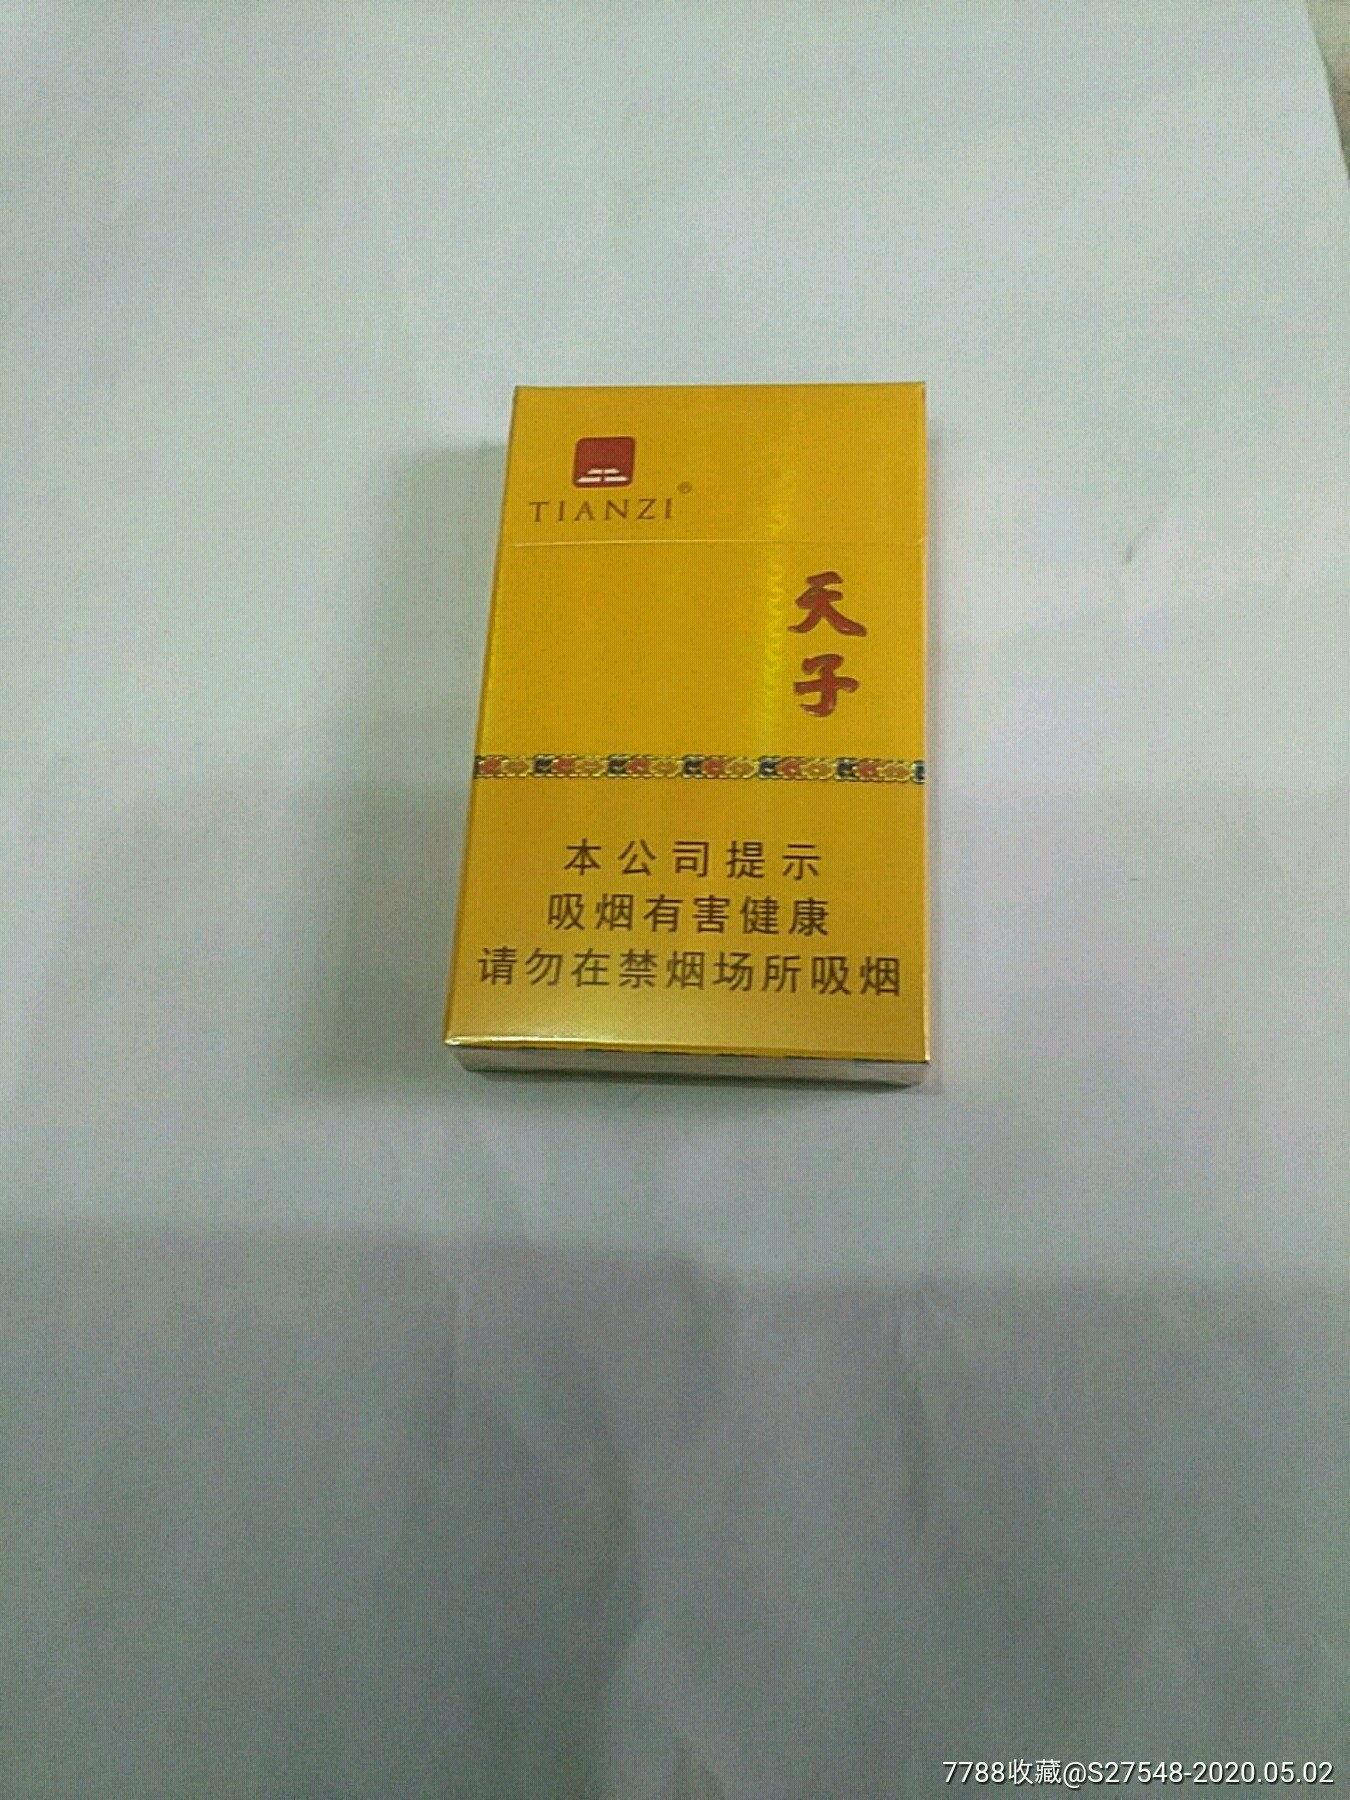 天子硬盒香烟18元图片